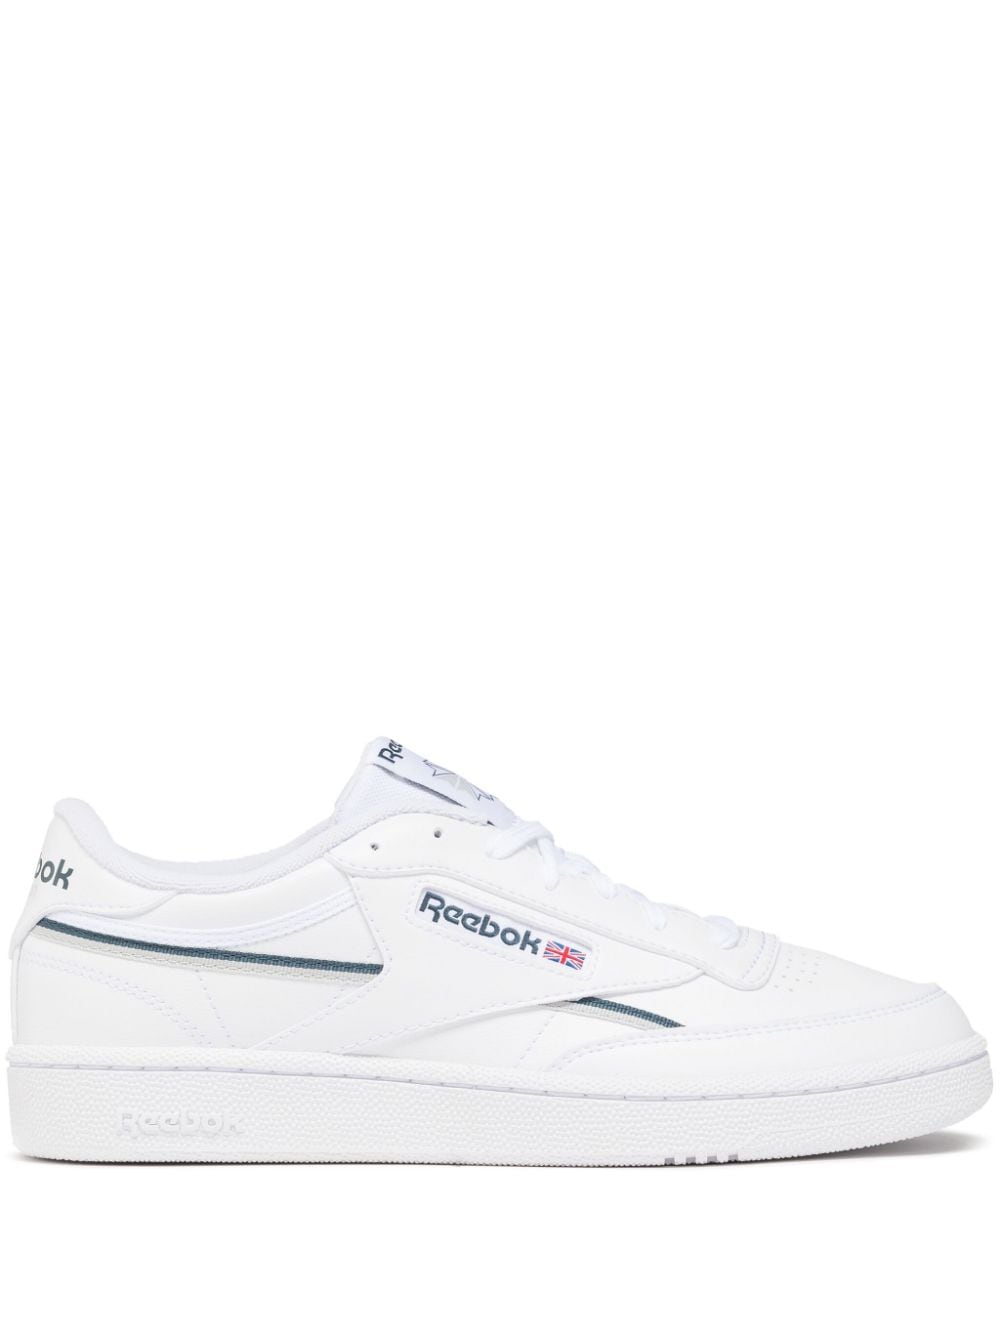 Reebok Club C 85 Vegan Sneakers In White